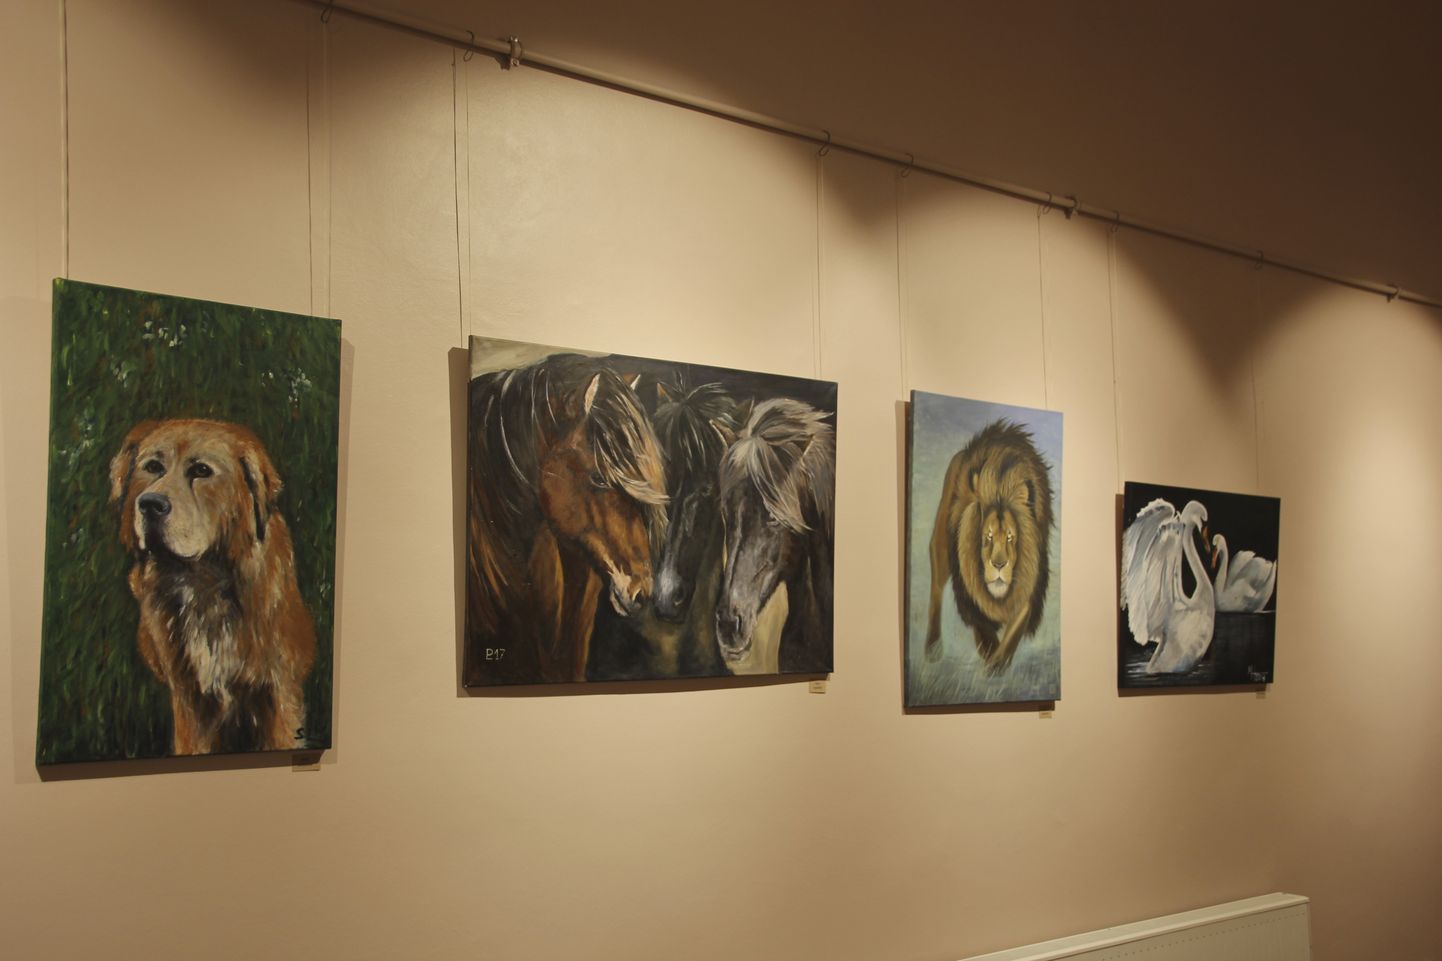 Kunstiharrastajate lemmikutena jõudis maalidele koeri ja hobuseid.